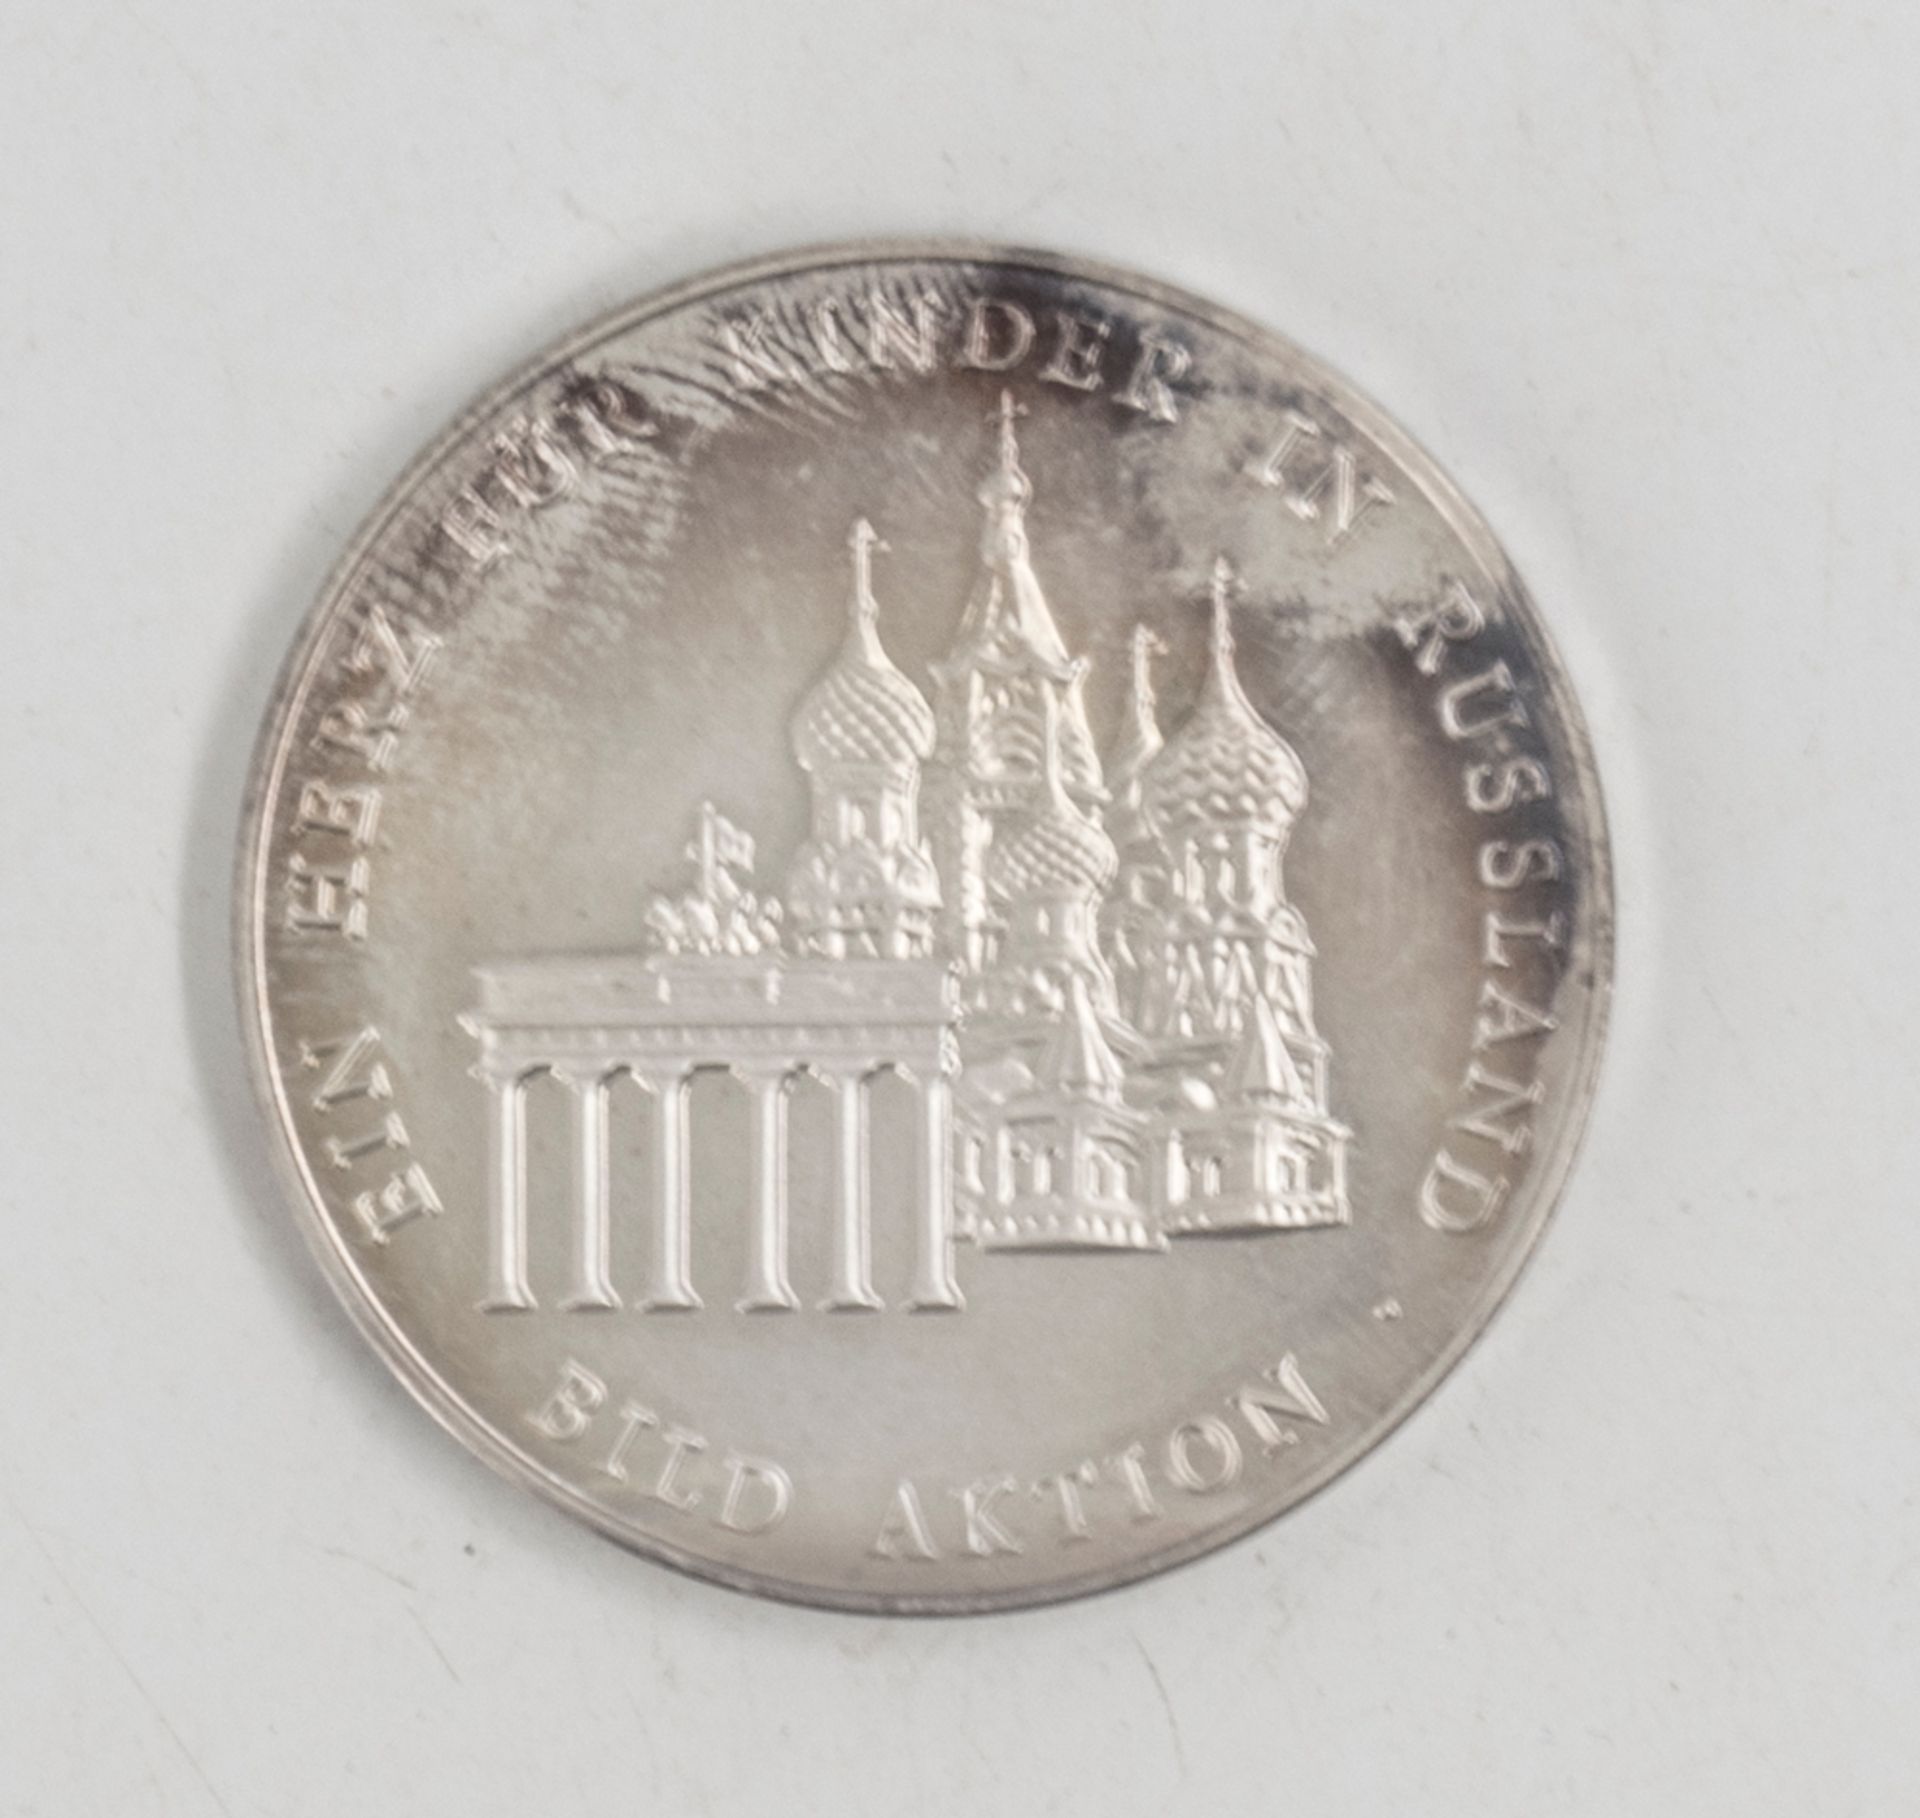 Bild - Friedensmedaille "Ein Herz für Russland". Silber. Gewicht: ca. 38 ,2 g. Durchmesser: ca. 42